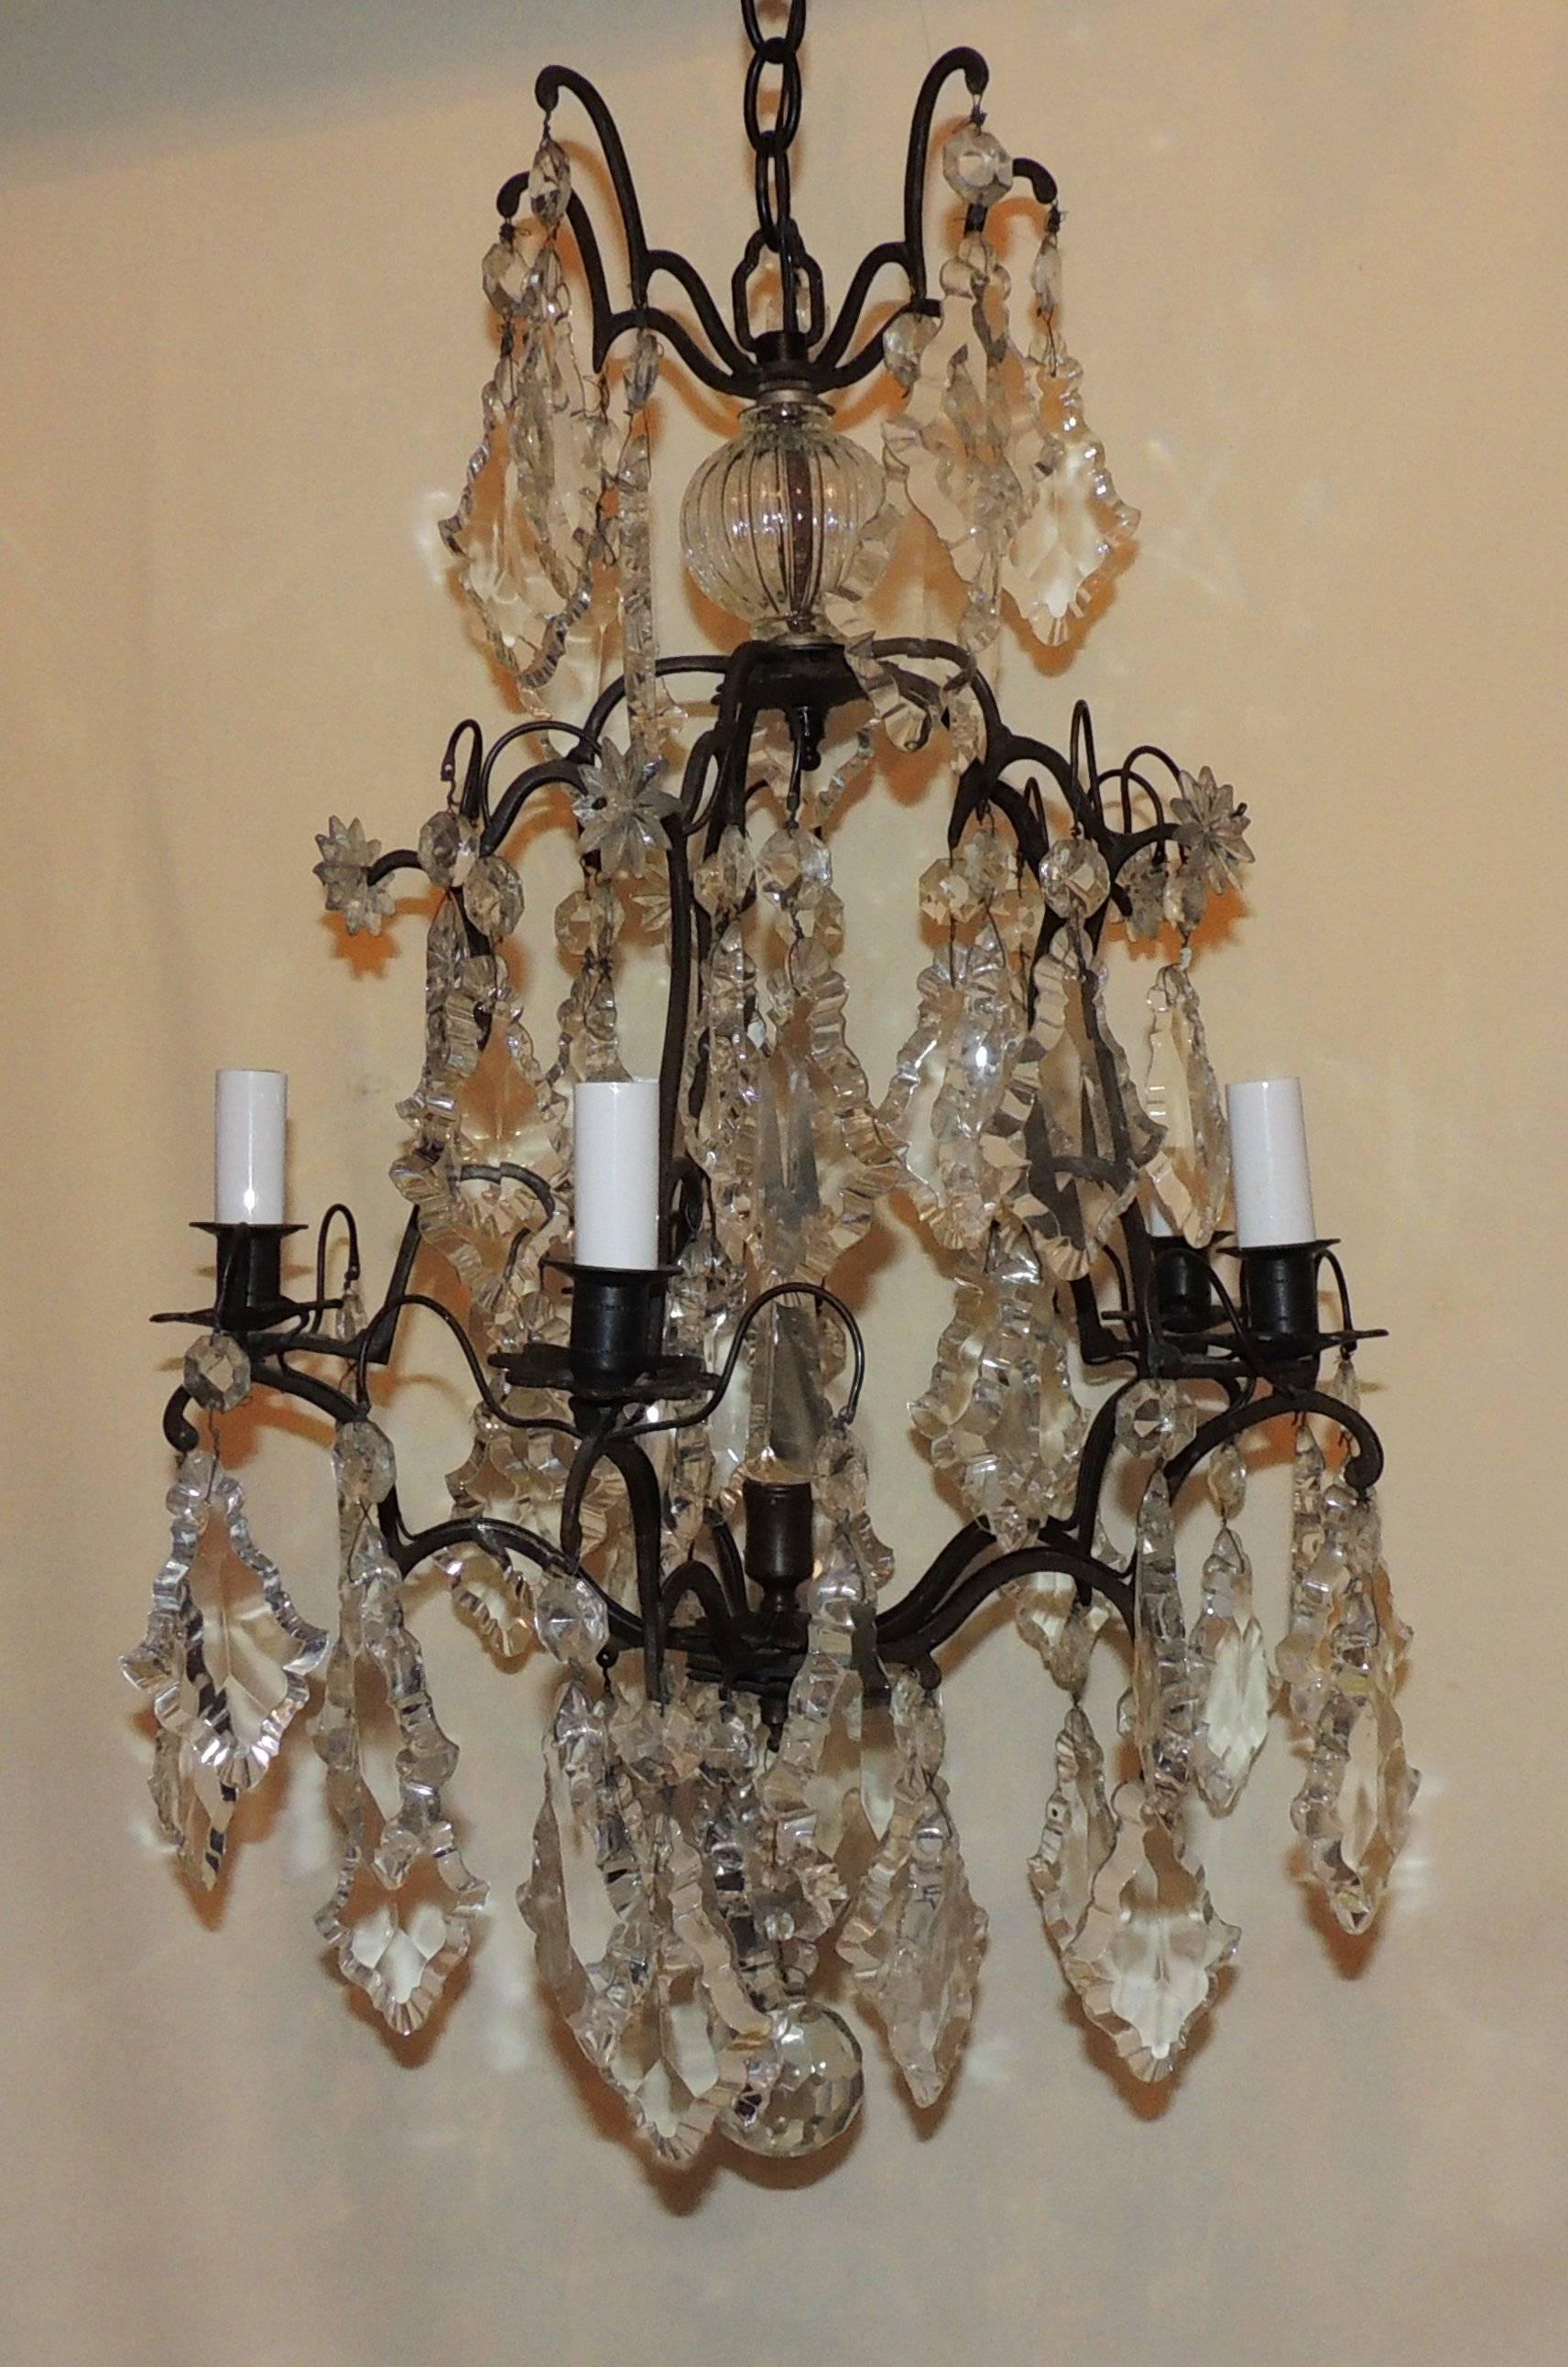 Charmant lustre à cinq lumières en bronze et cristal français, avec des cristaux taillés en clair et un fleuron central en cristal.

Mesures : 24